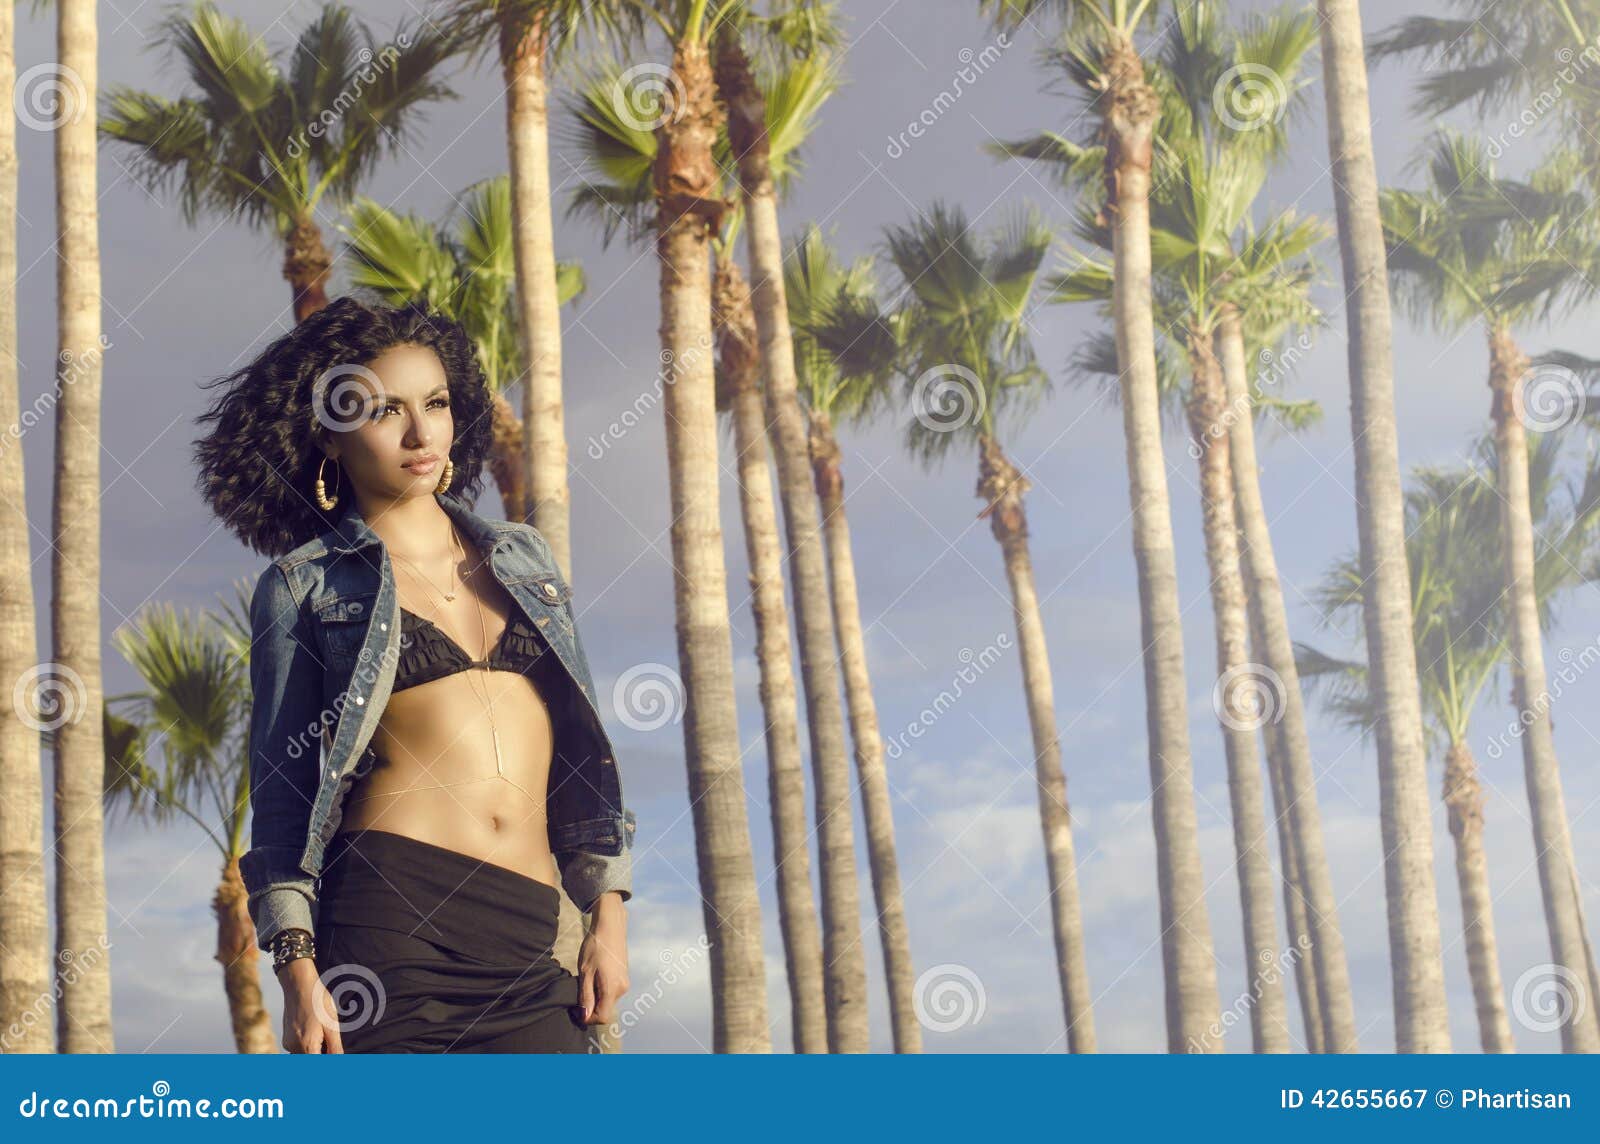 woman wearing swimwear epic palm tree background.